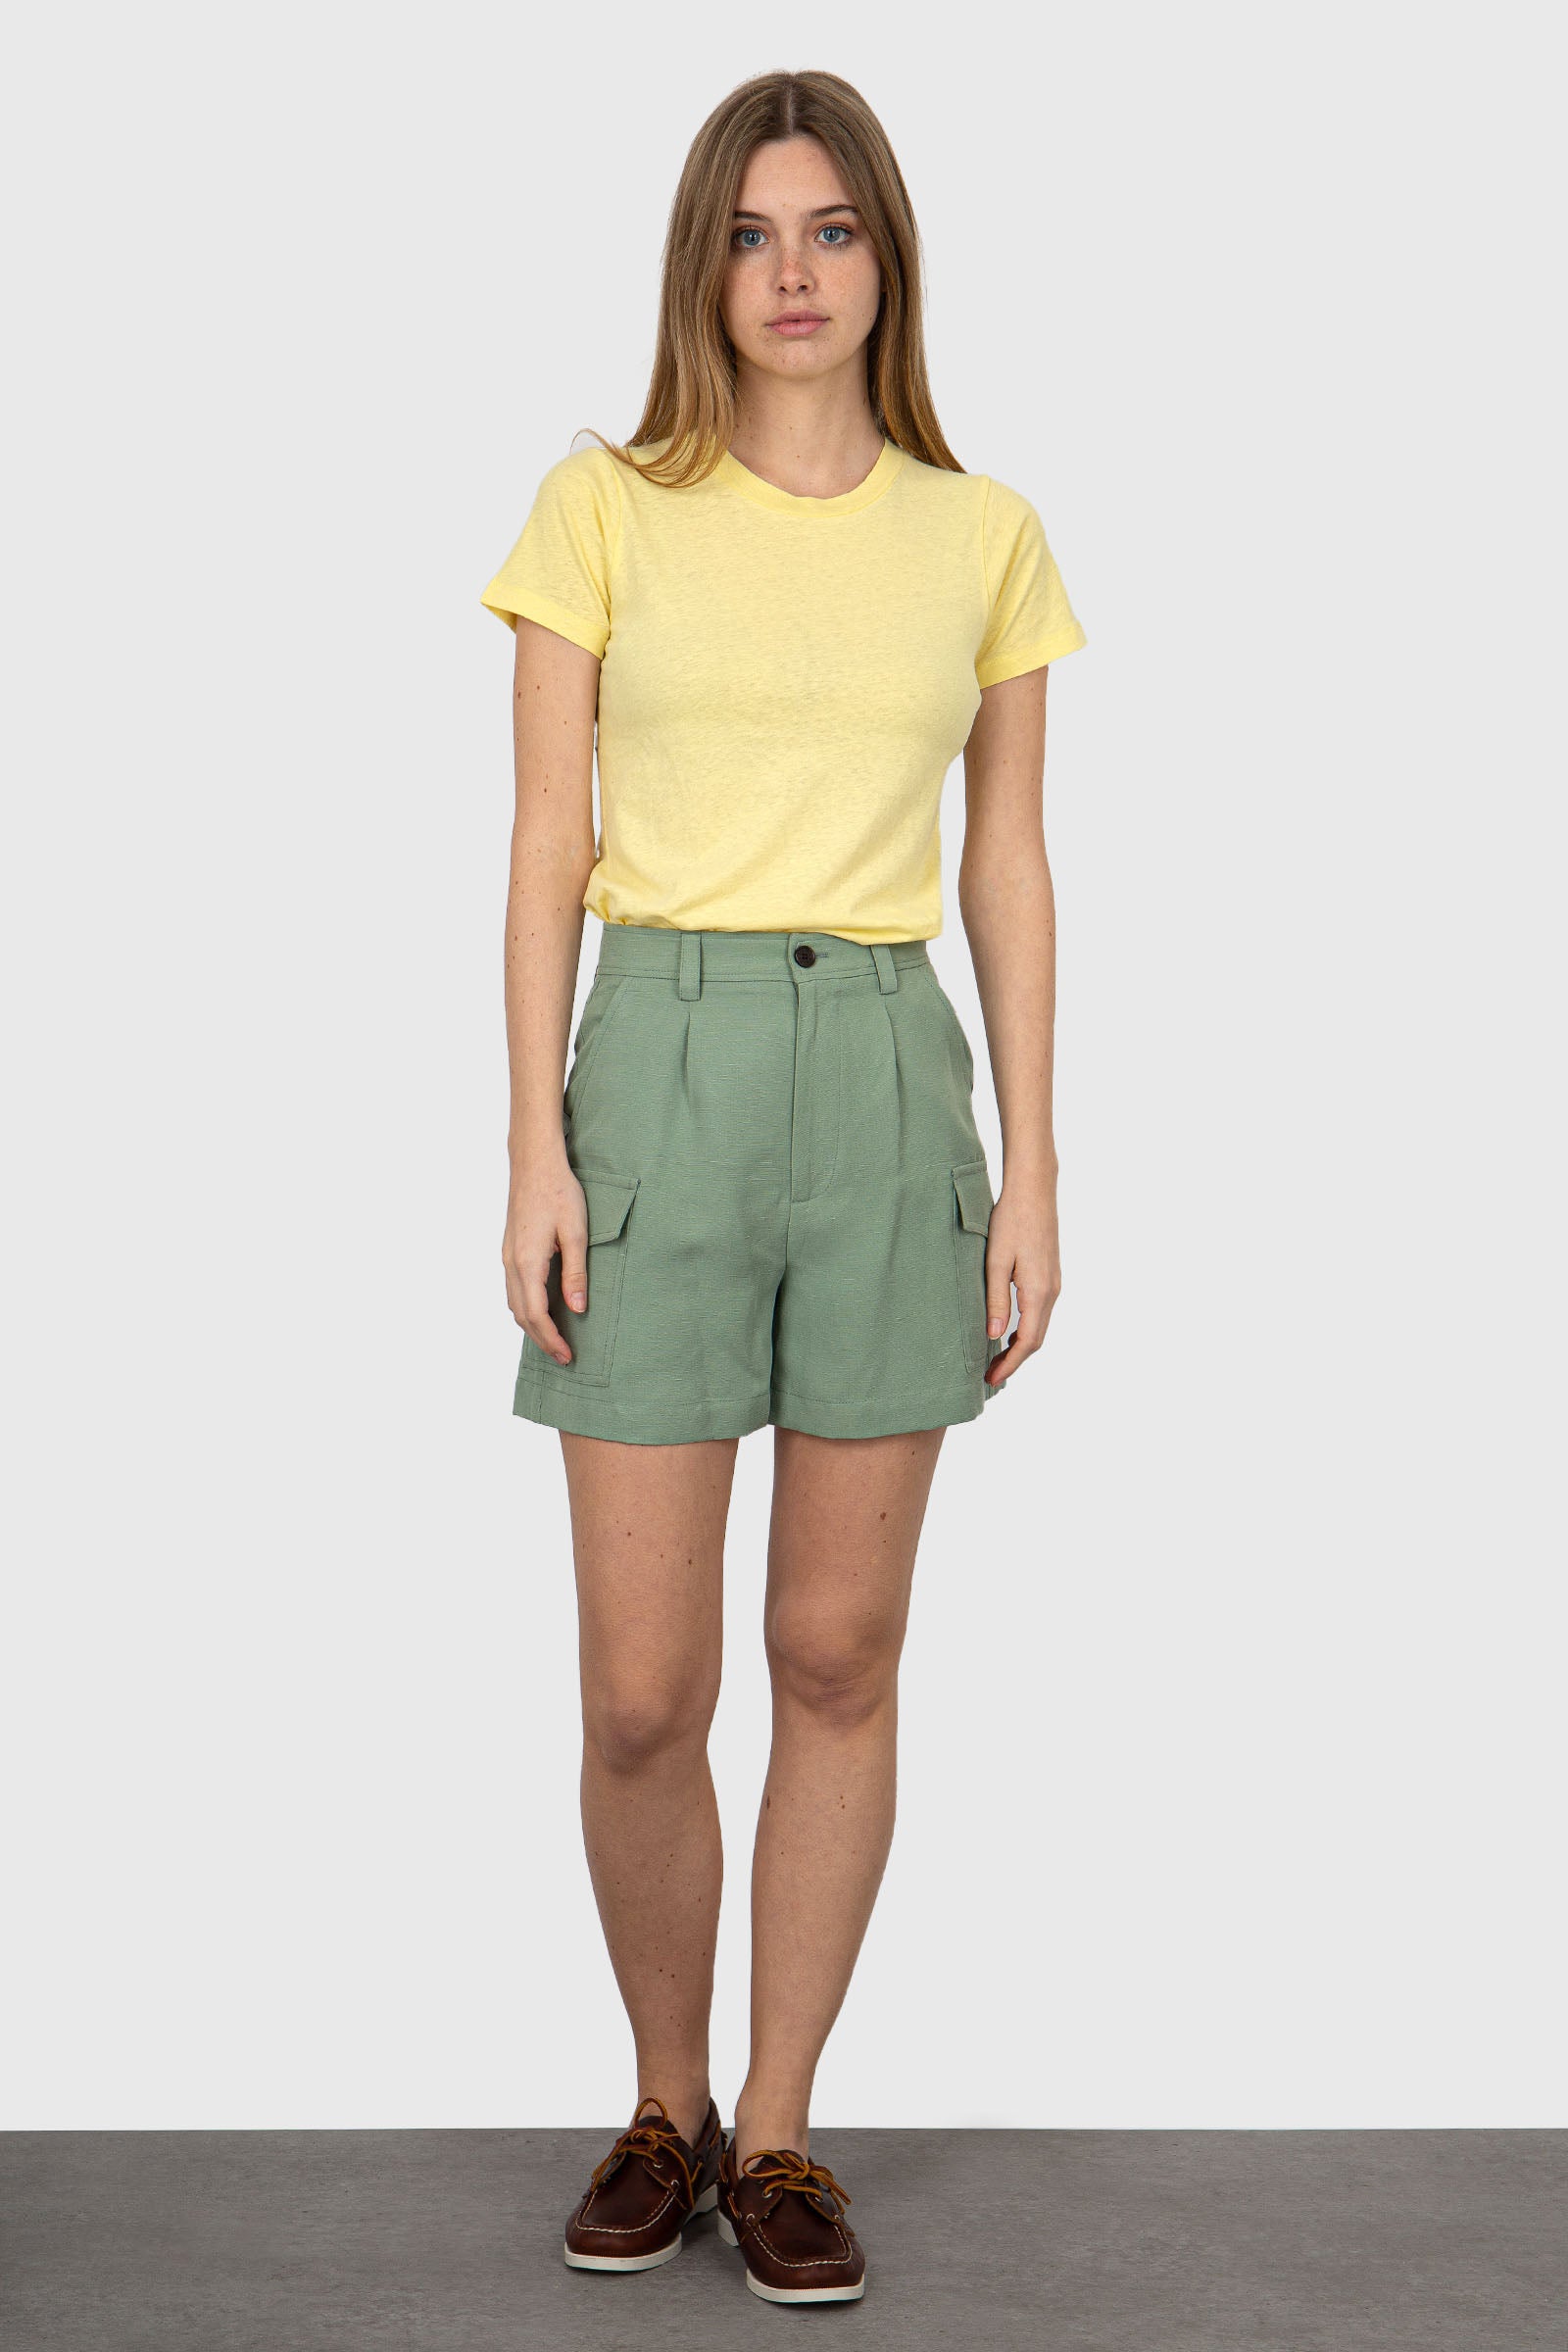 Woolrich Mint Green Linen/Viscose Shorts - 6